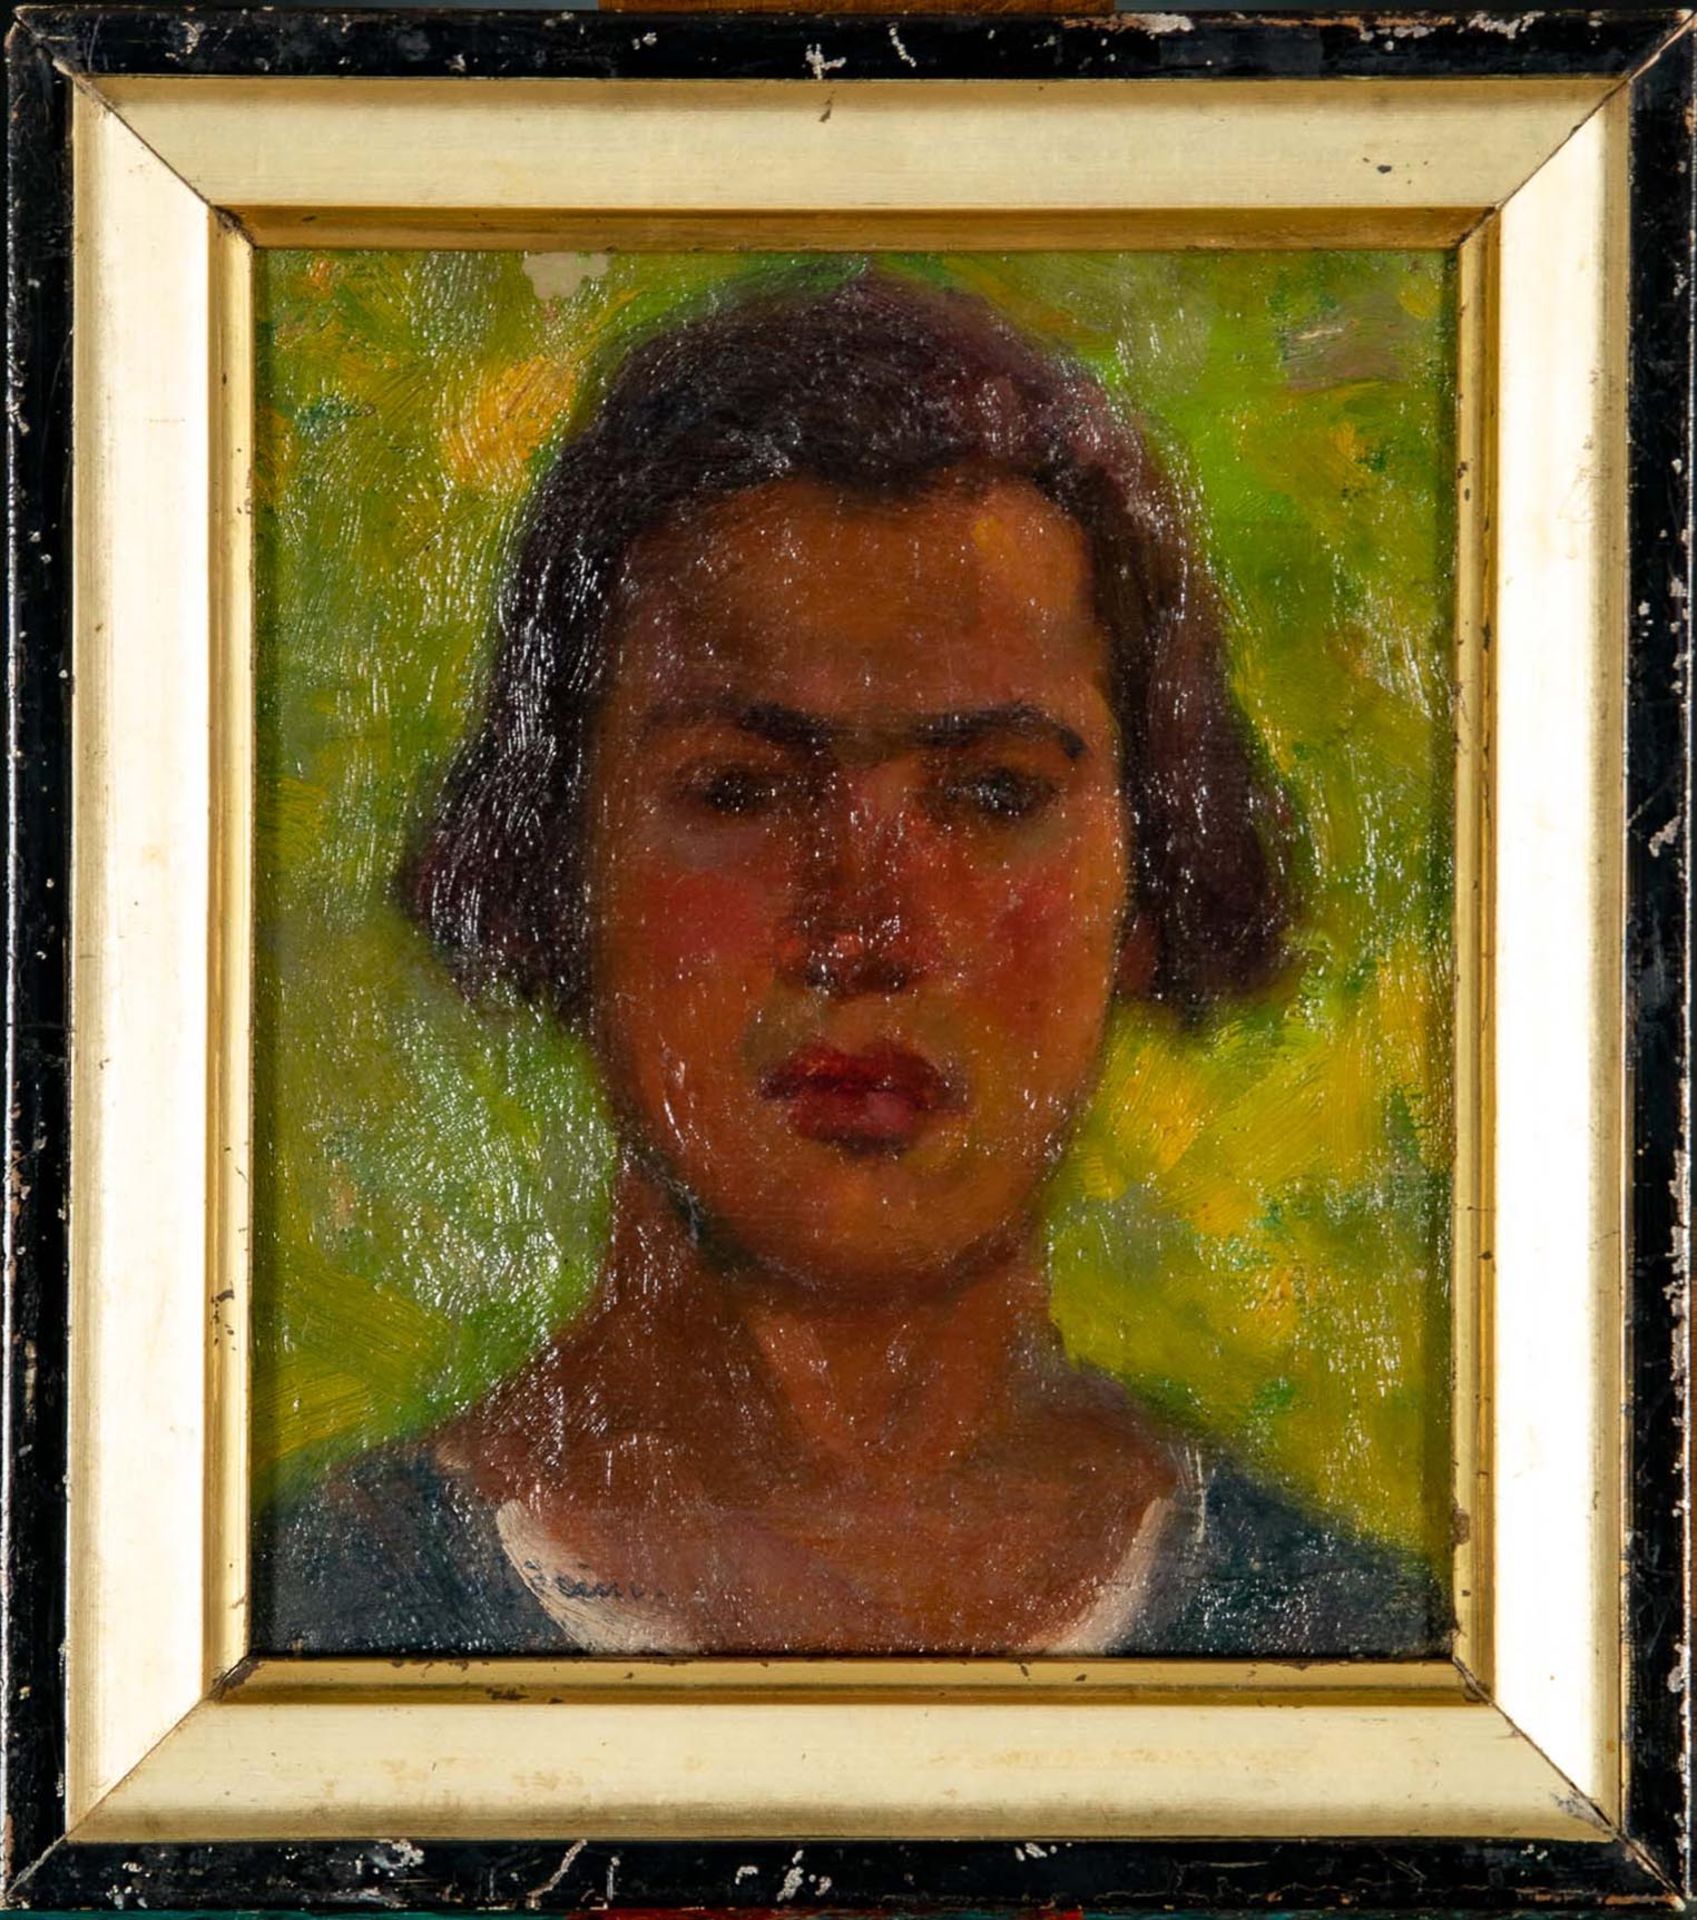 "Porträt", Kopfporträt eines jungen Mannes vor grünlich- gelbem Hintergrund; kleinformatiges Gemäld